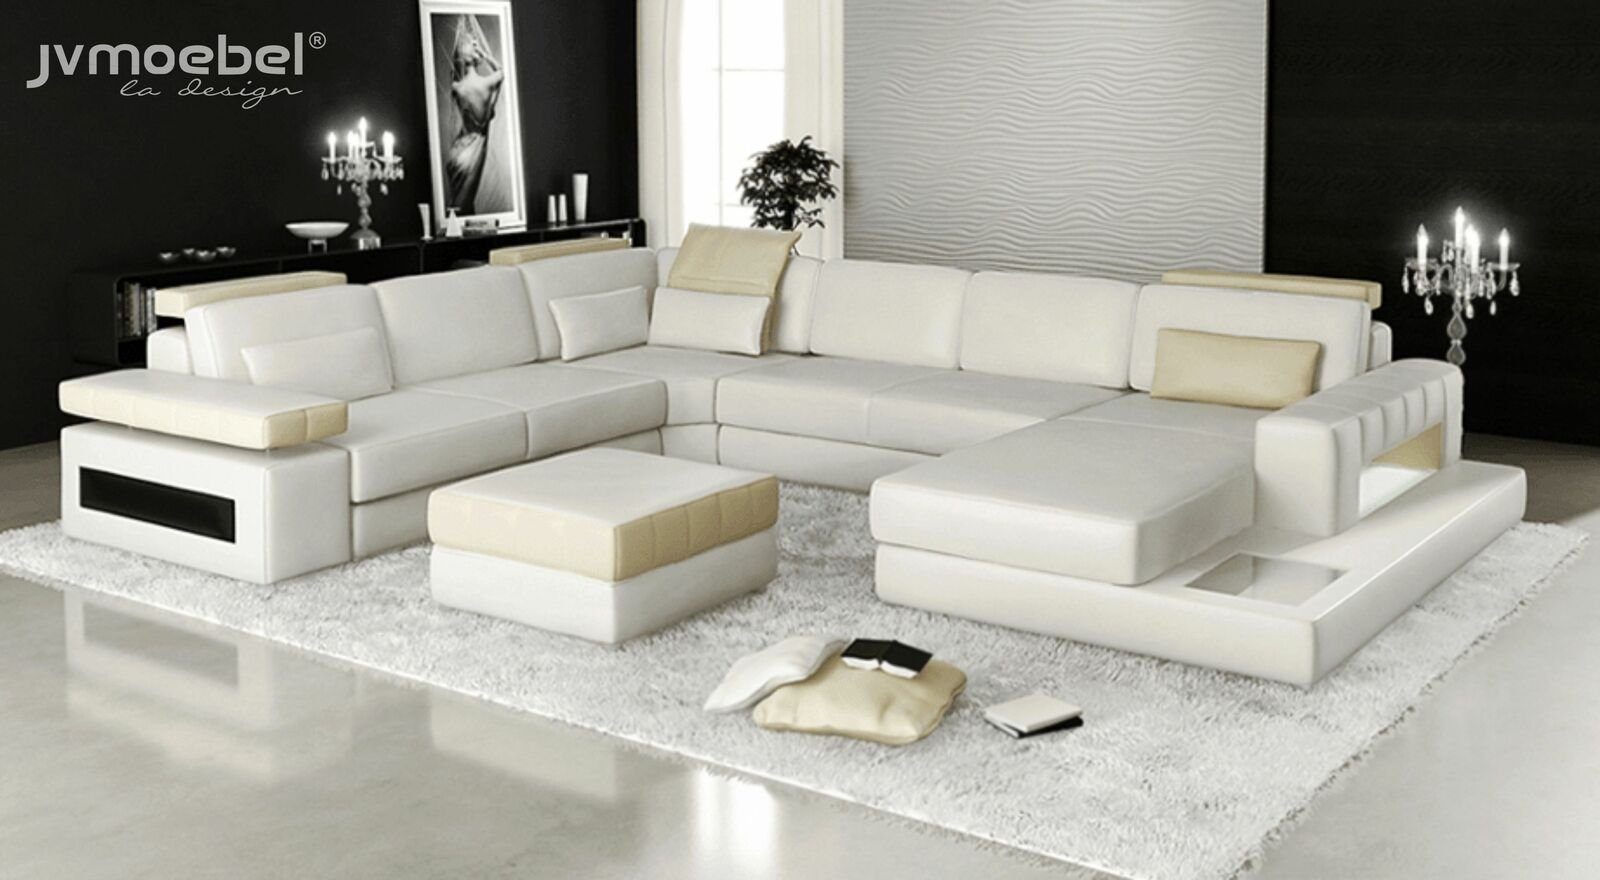 Made Leder Europe Sofa in Stoff, Textil Couch Polster Big Form JVmoebel Ecksofa Ecksofa U